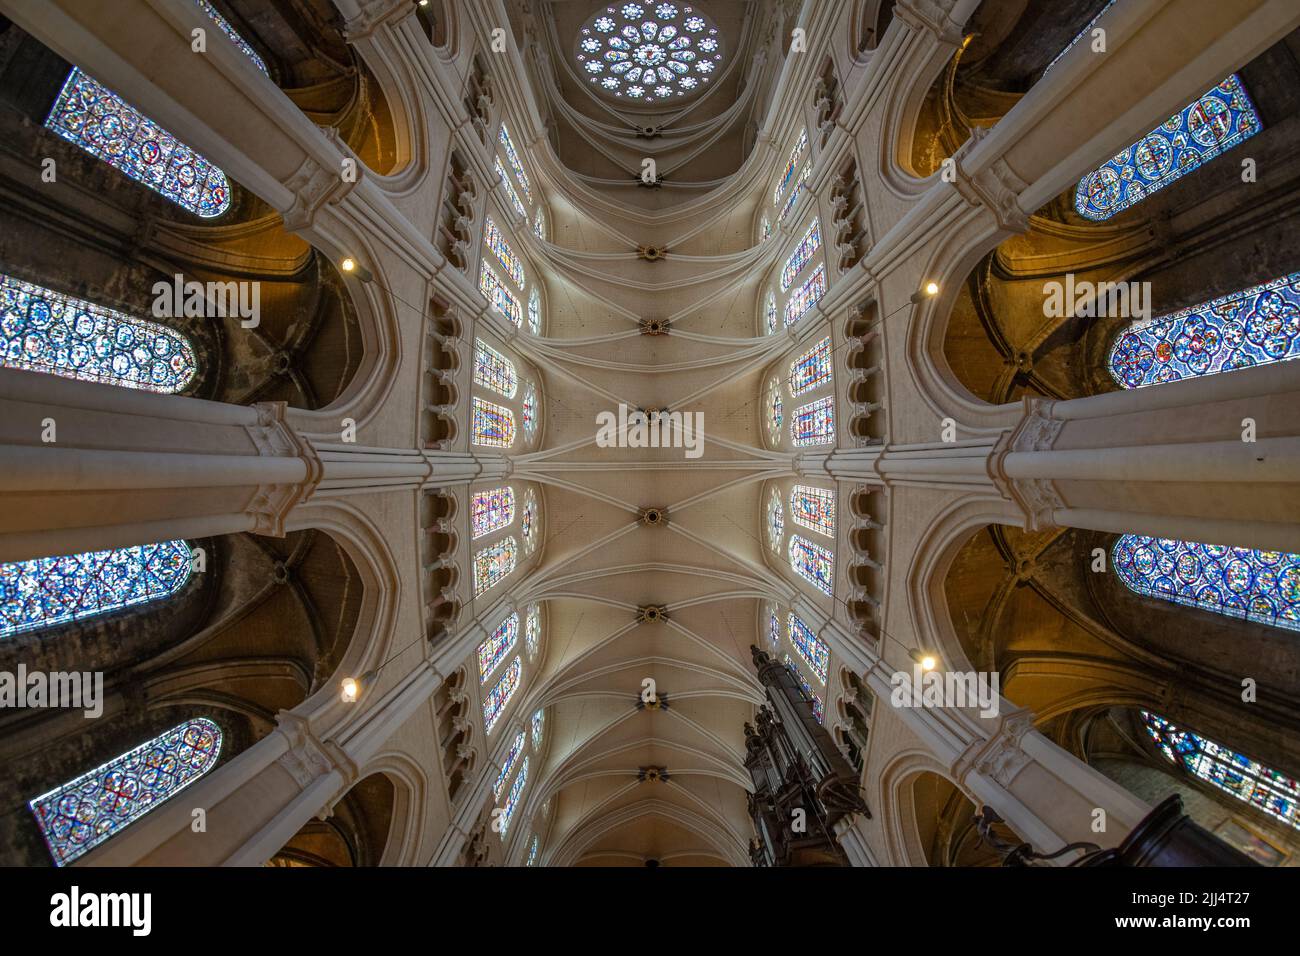 La nef principale de la cathédrale de Chartres (France) Banque D'Images